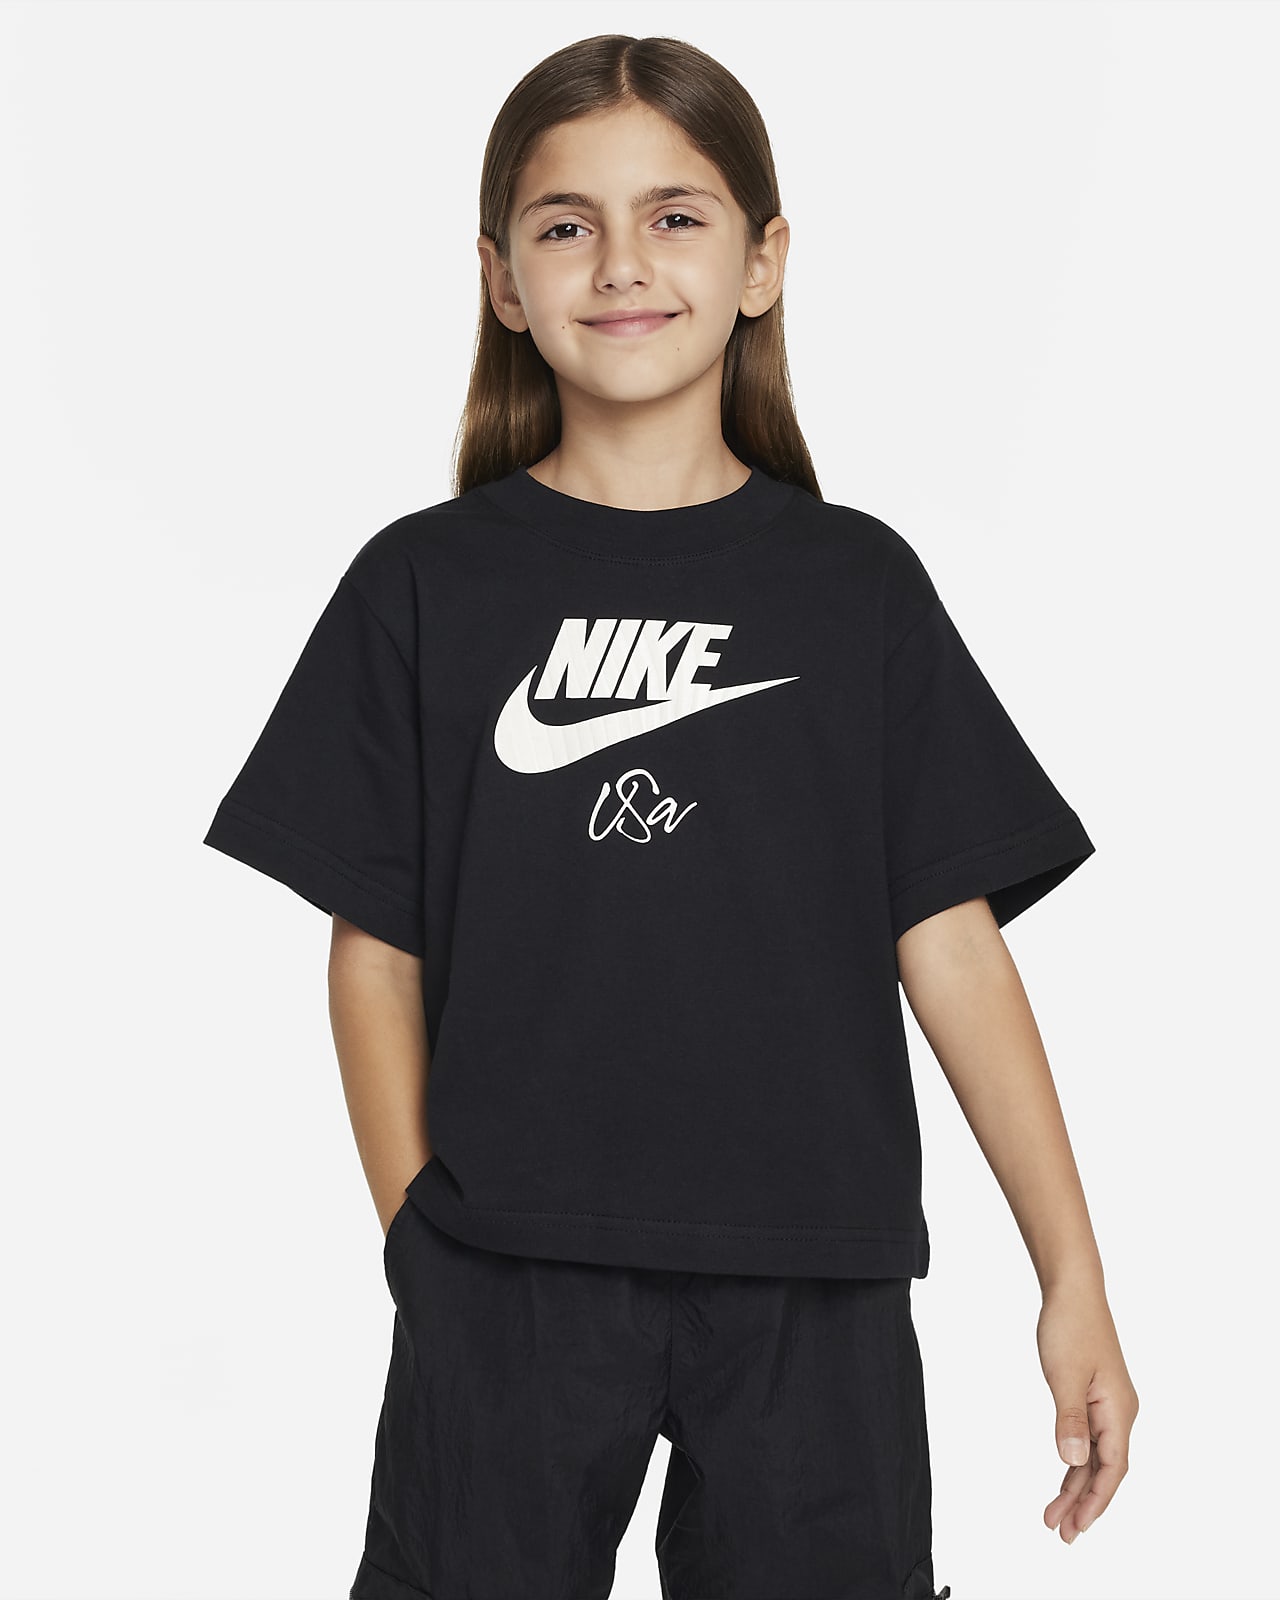 U.S. Big Kids' (Girls') Nike T-Shirt